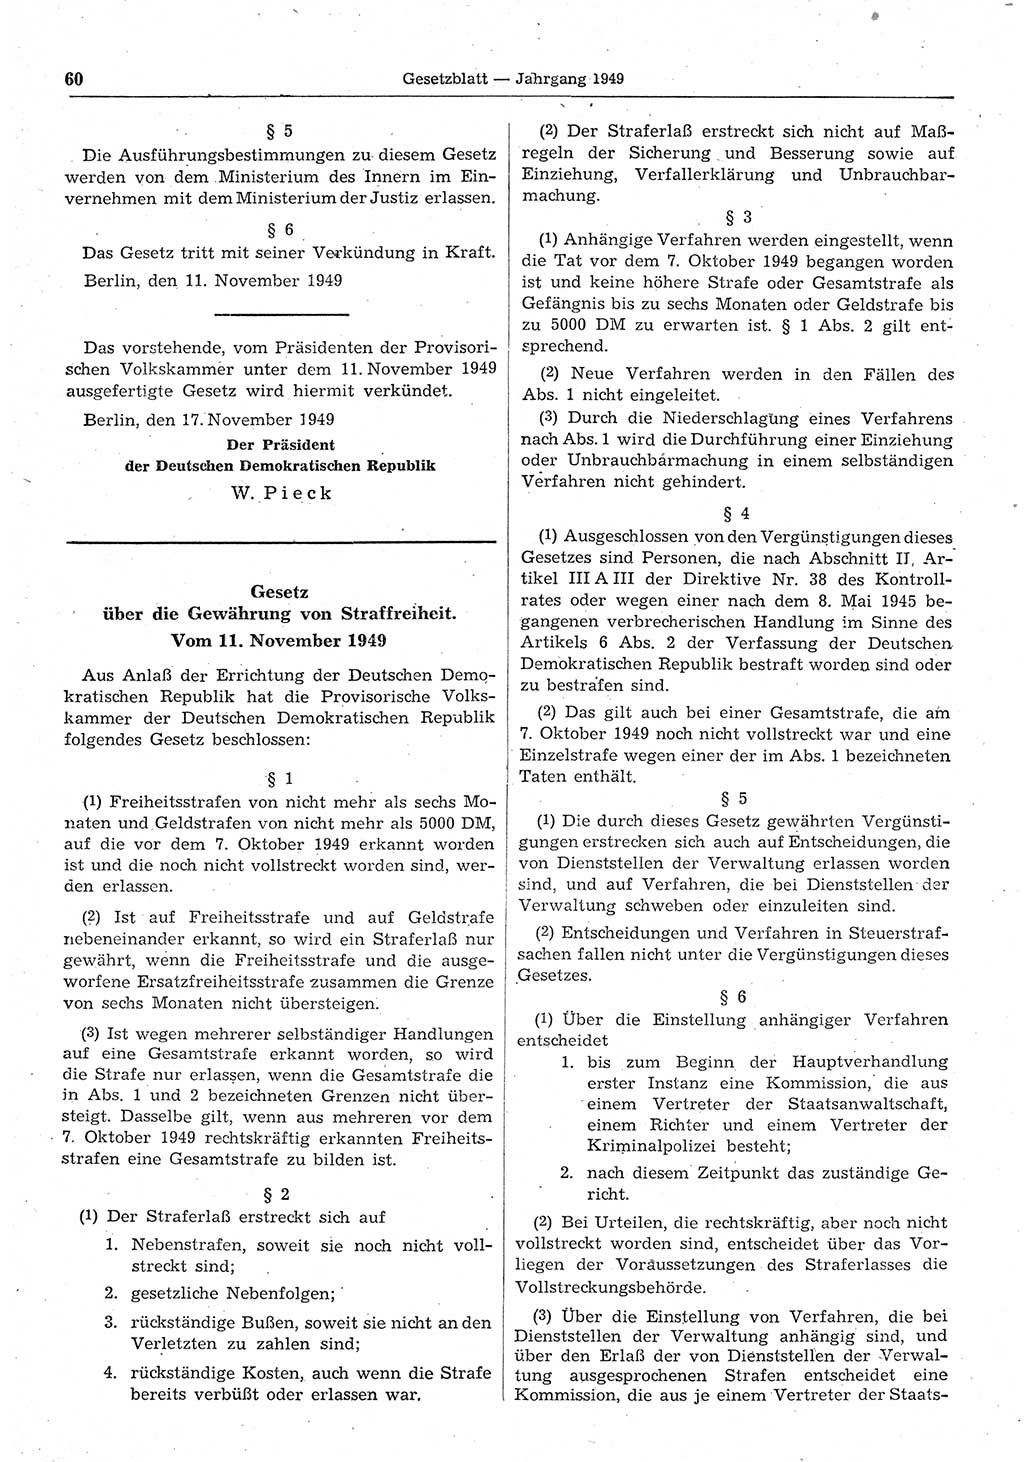 Gesetzblatt (GBl.) der Deutschen Demokratischen Republik (DDR) 1949, Seite 60 (GBl. DDR 1949, S. 60)